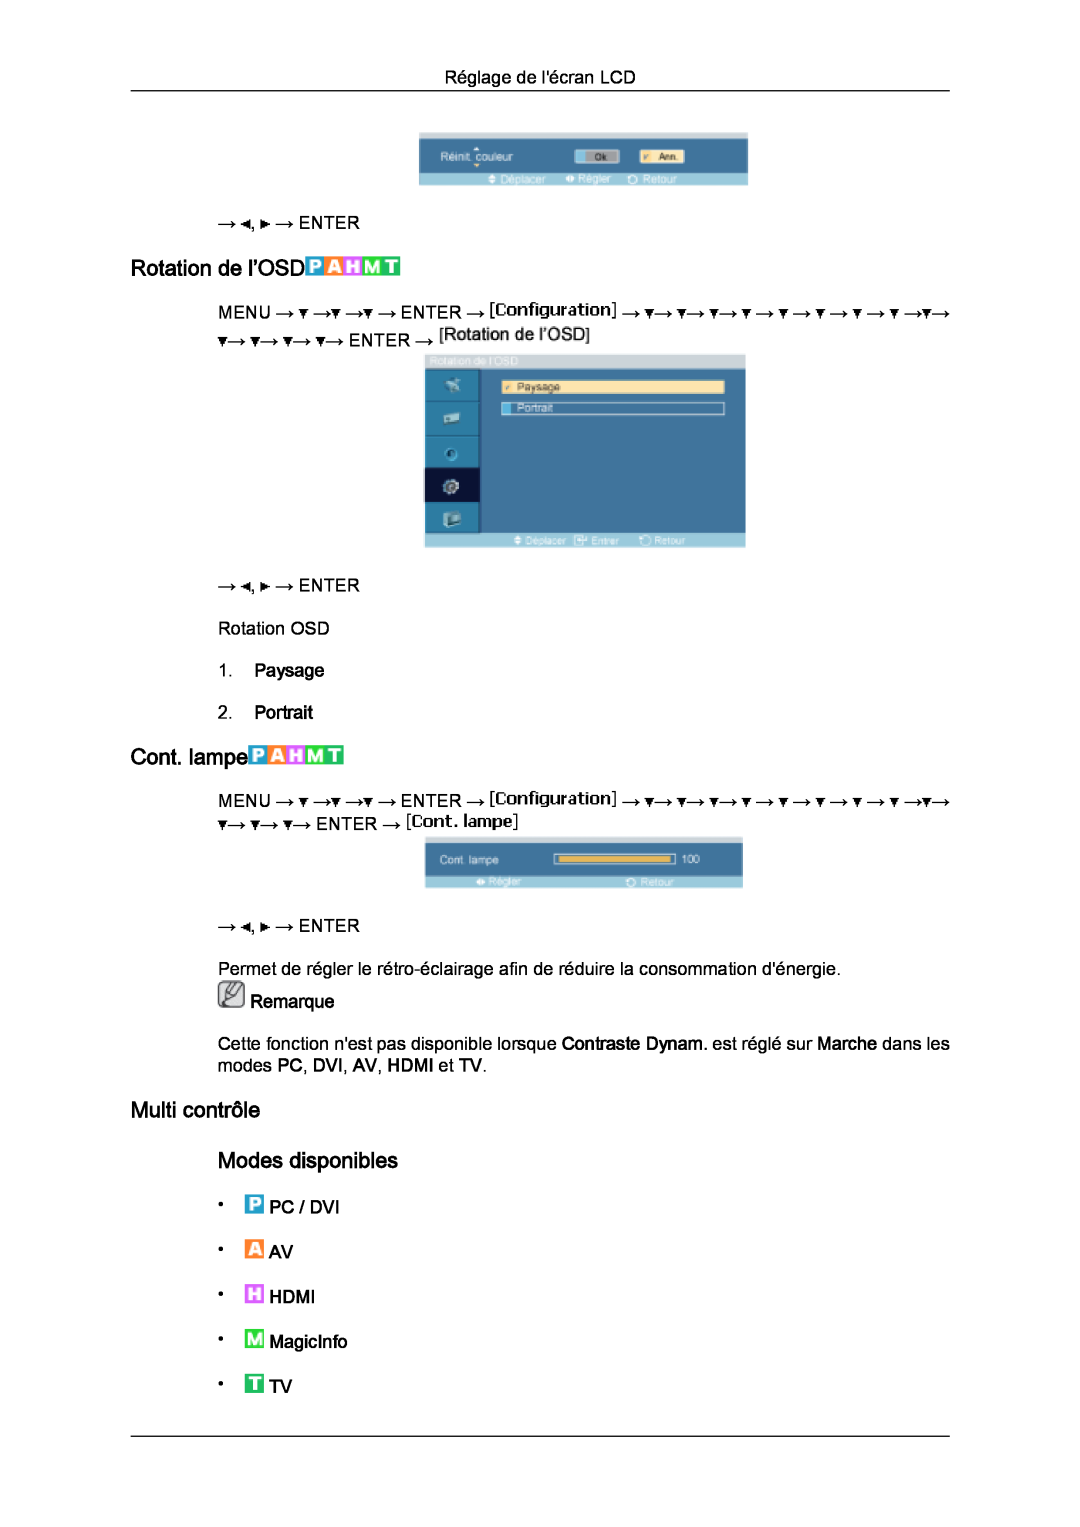 Samsung LH46SOPQBC/EN Rotation de l’OSD, Cont. lampe, Multi contrôle Modes disponibles, Paysage 2. Portrait, Remarque 